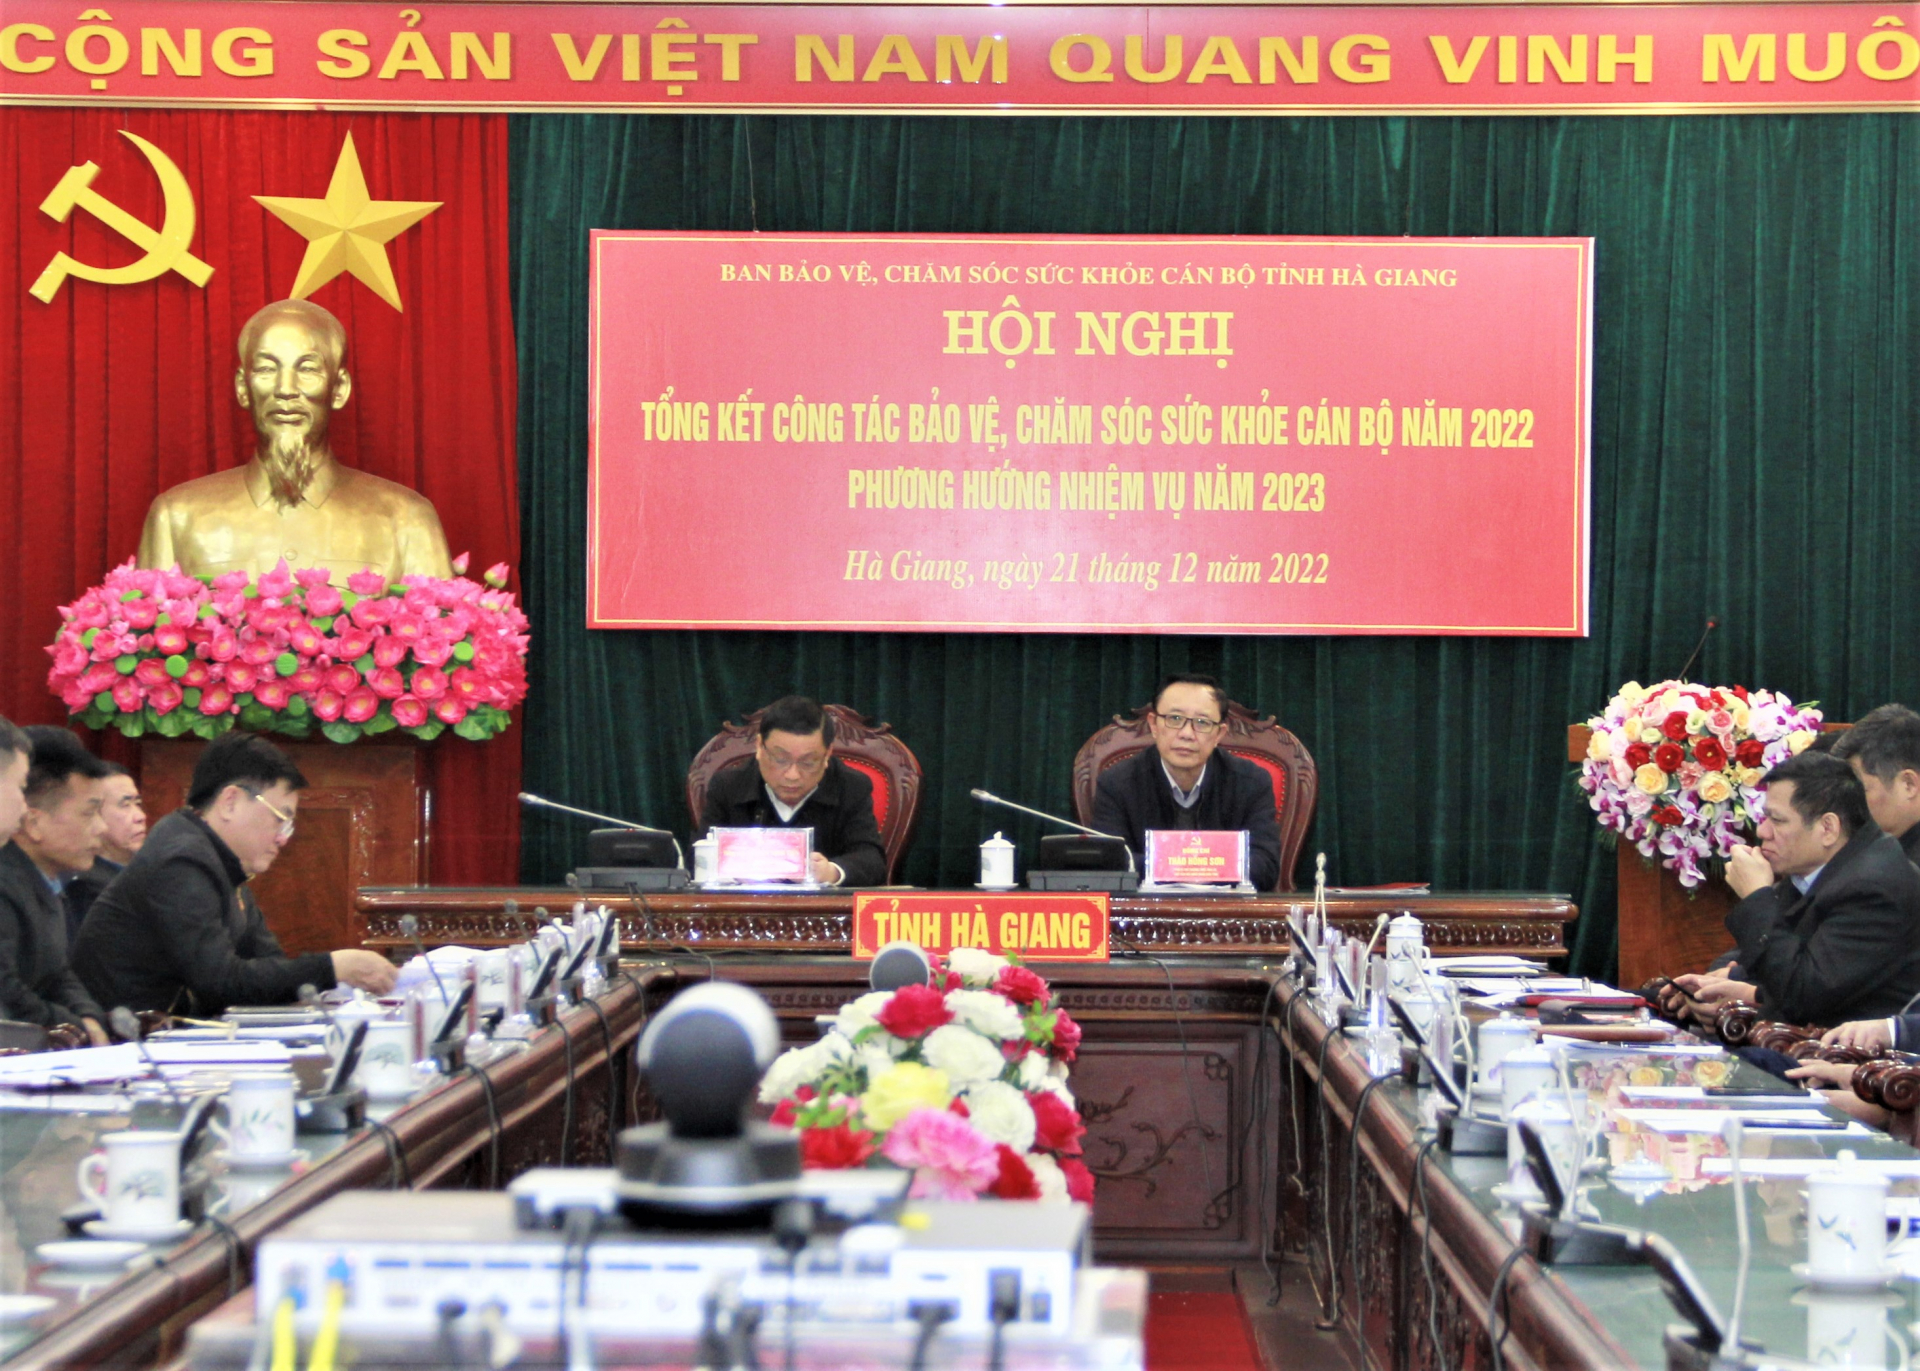 Phó Bí thư Thường trực Tỉnh ủy, Chủ tịch HĐND tỉnh Thào Hồng Sơn và các đại biểu dự hội nghị tại điểm cầu tỉnh.